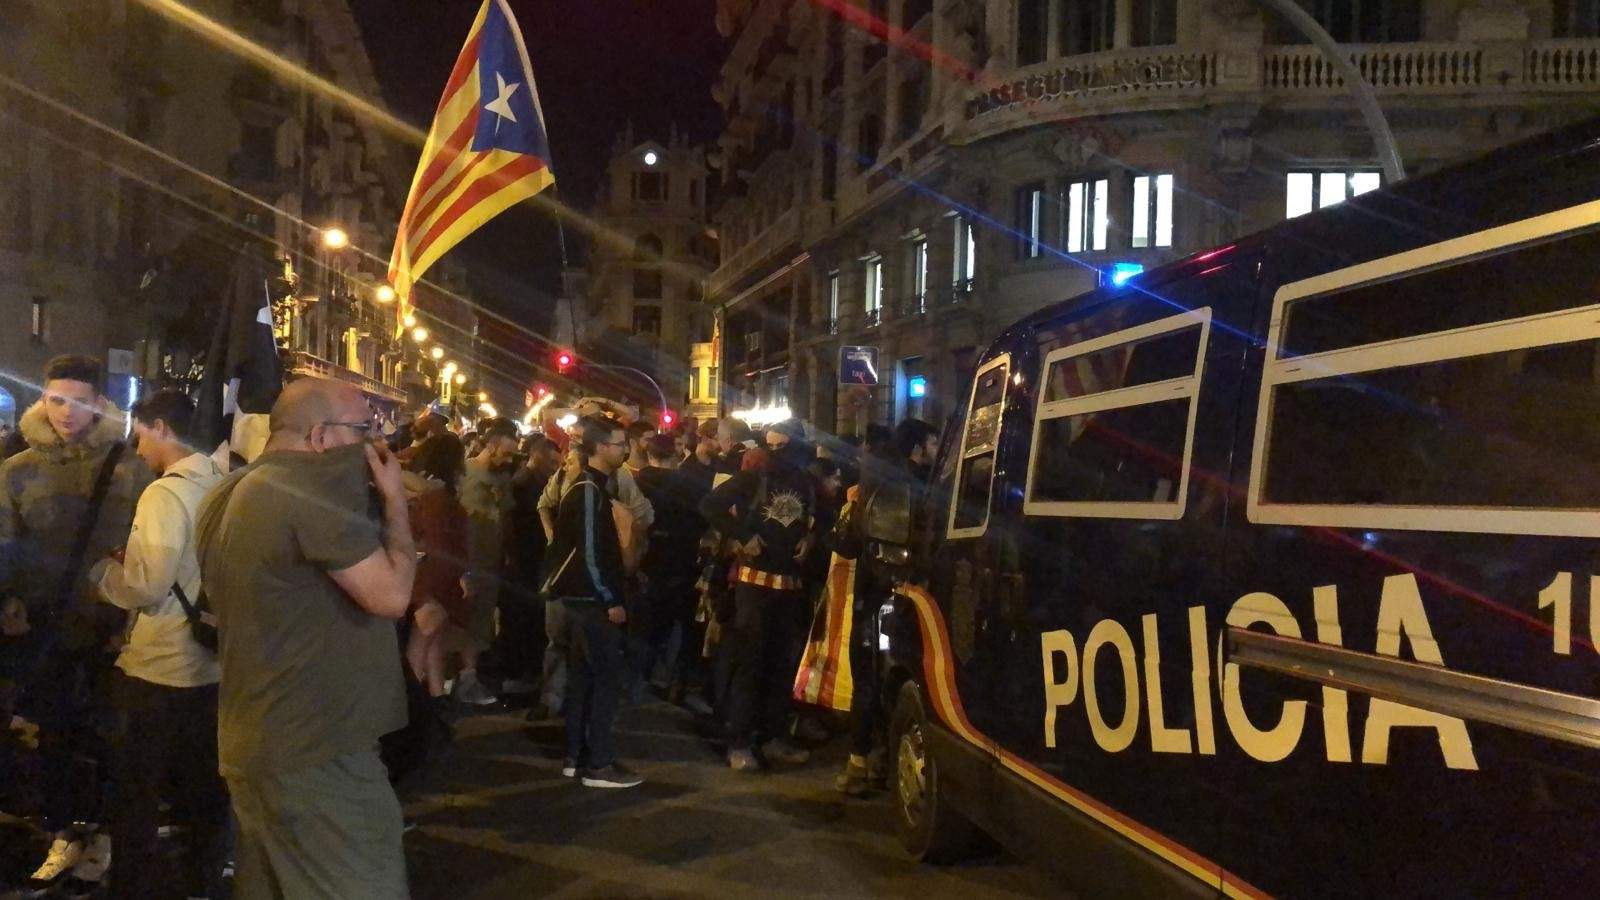 Furgones ante la Jefatura de Policía en la Via Laietana de Barcelona durante una protesta por la actuación policial en los disturbios a raíz de la sentencia del proceso independentista, el 26 de octubre de 2019.